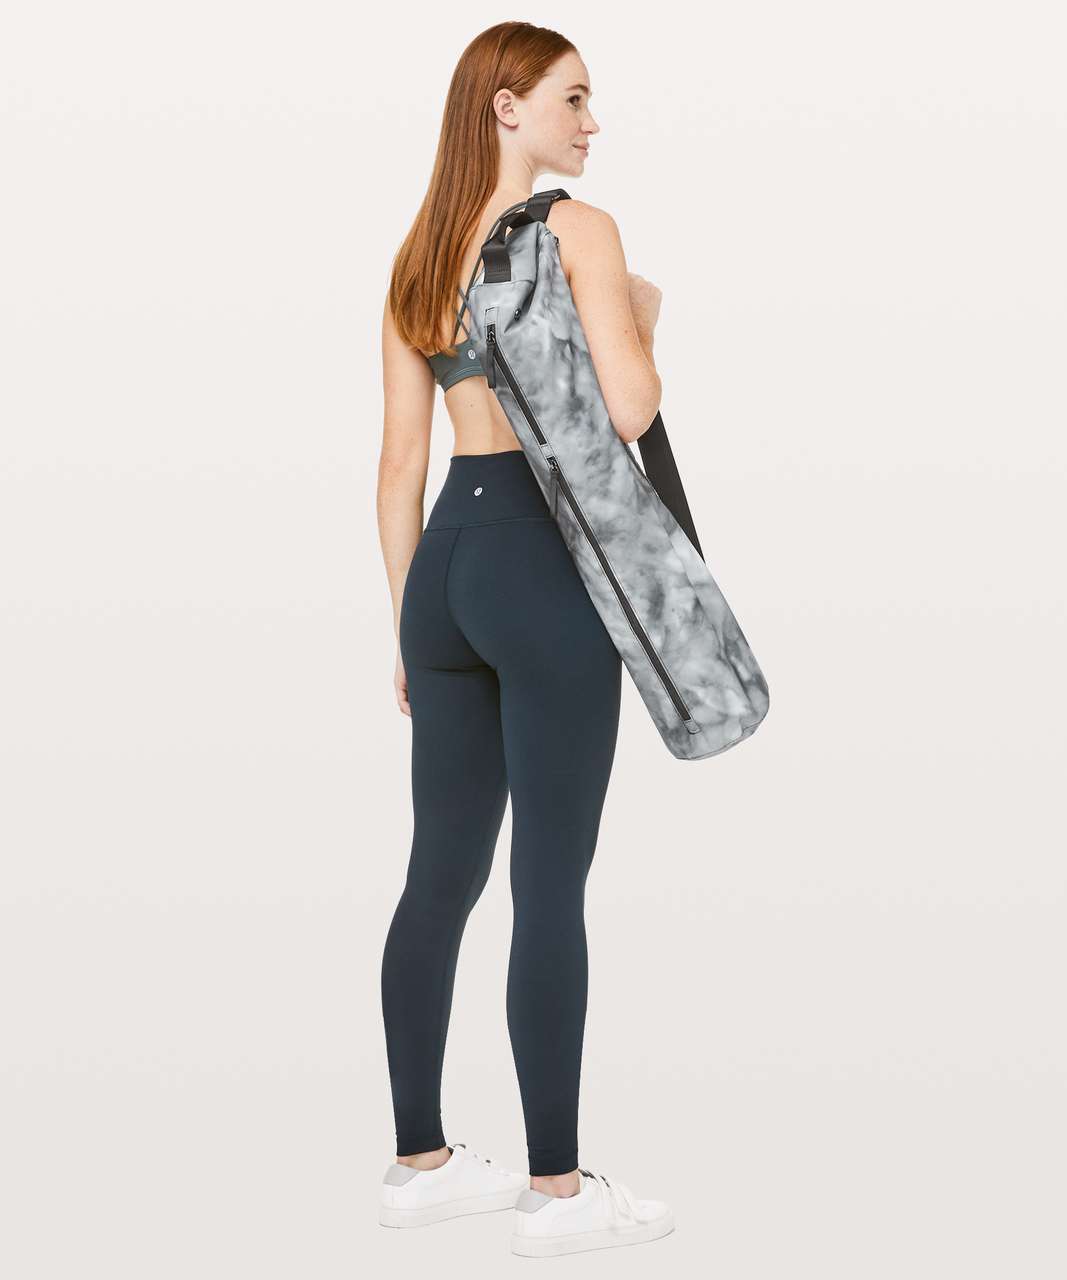 Lululemon Yoga mat carrier bag with shoulder strap black - General  Maintenance & Diagnostics Ltd